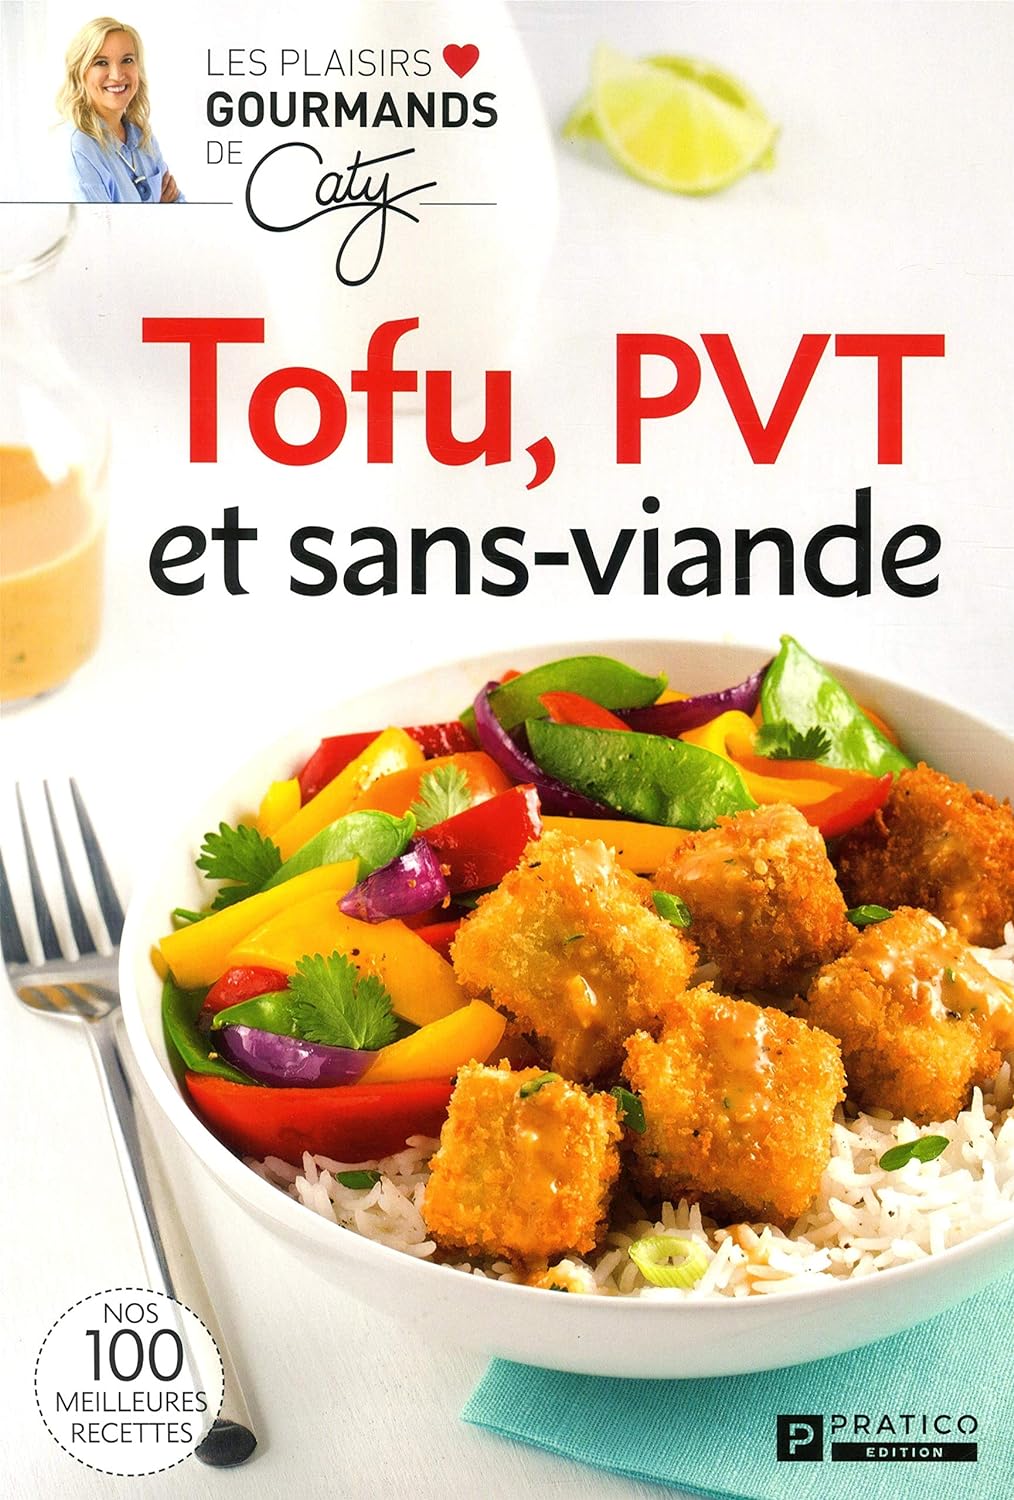 Les plaisirs gourmands de Cathy : Tofu, PVT et sans-vainde - Cathy Bérubé